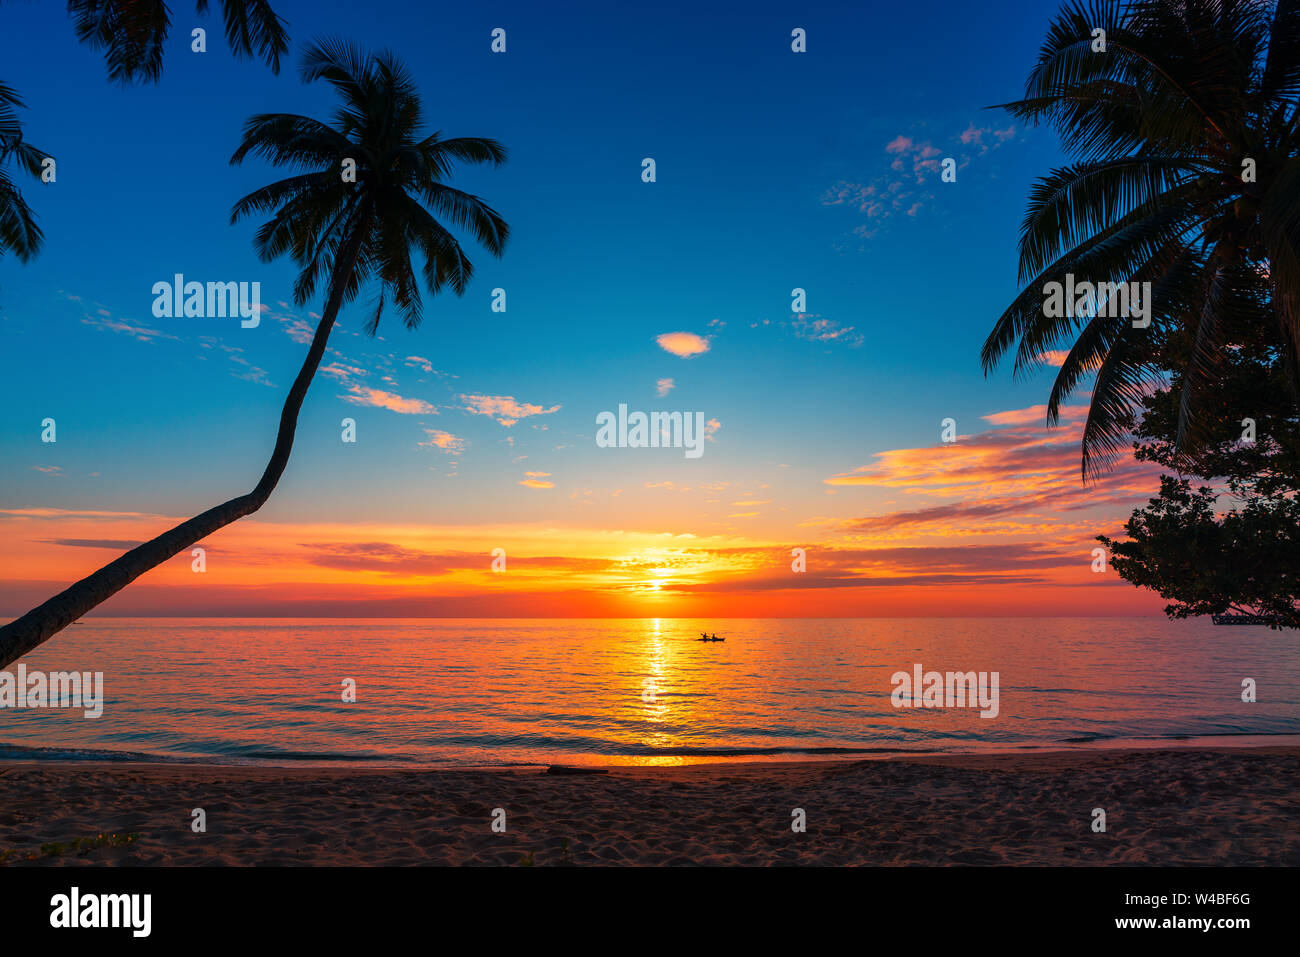 Nature paysage incroyable au coucher du soleil plage tropicale avec palmiers de noix de coco silhouette, ciel bleu et soleil à l'horizon Banque D'Images